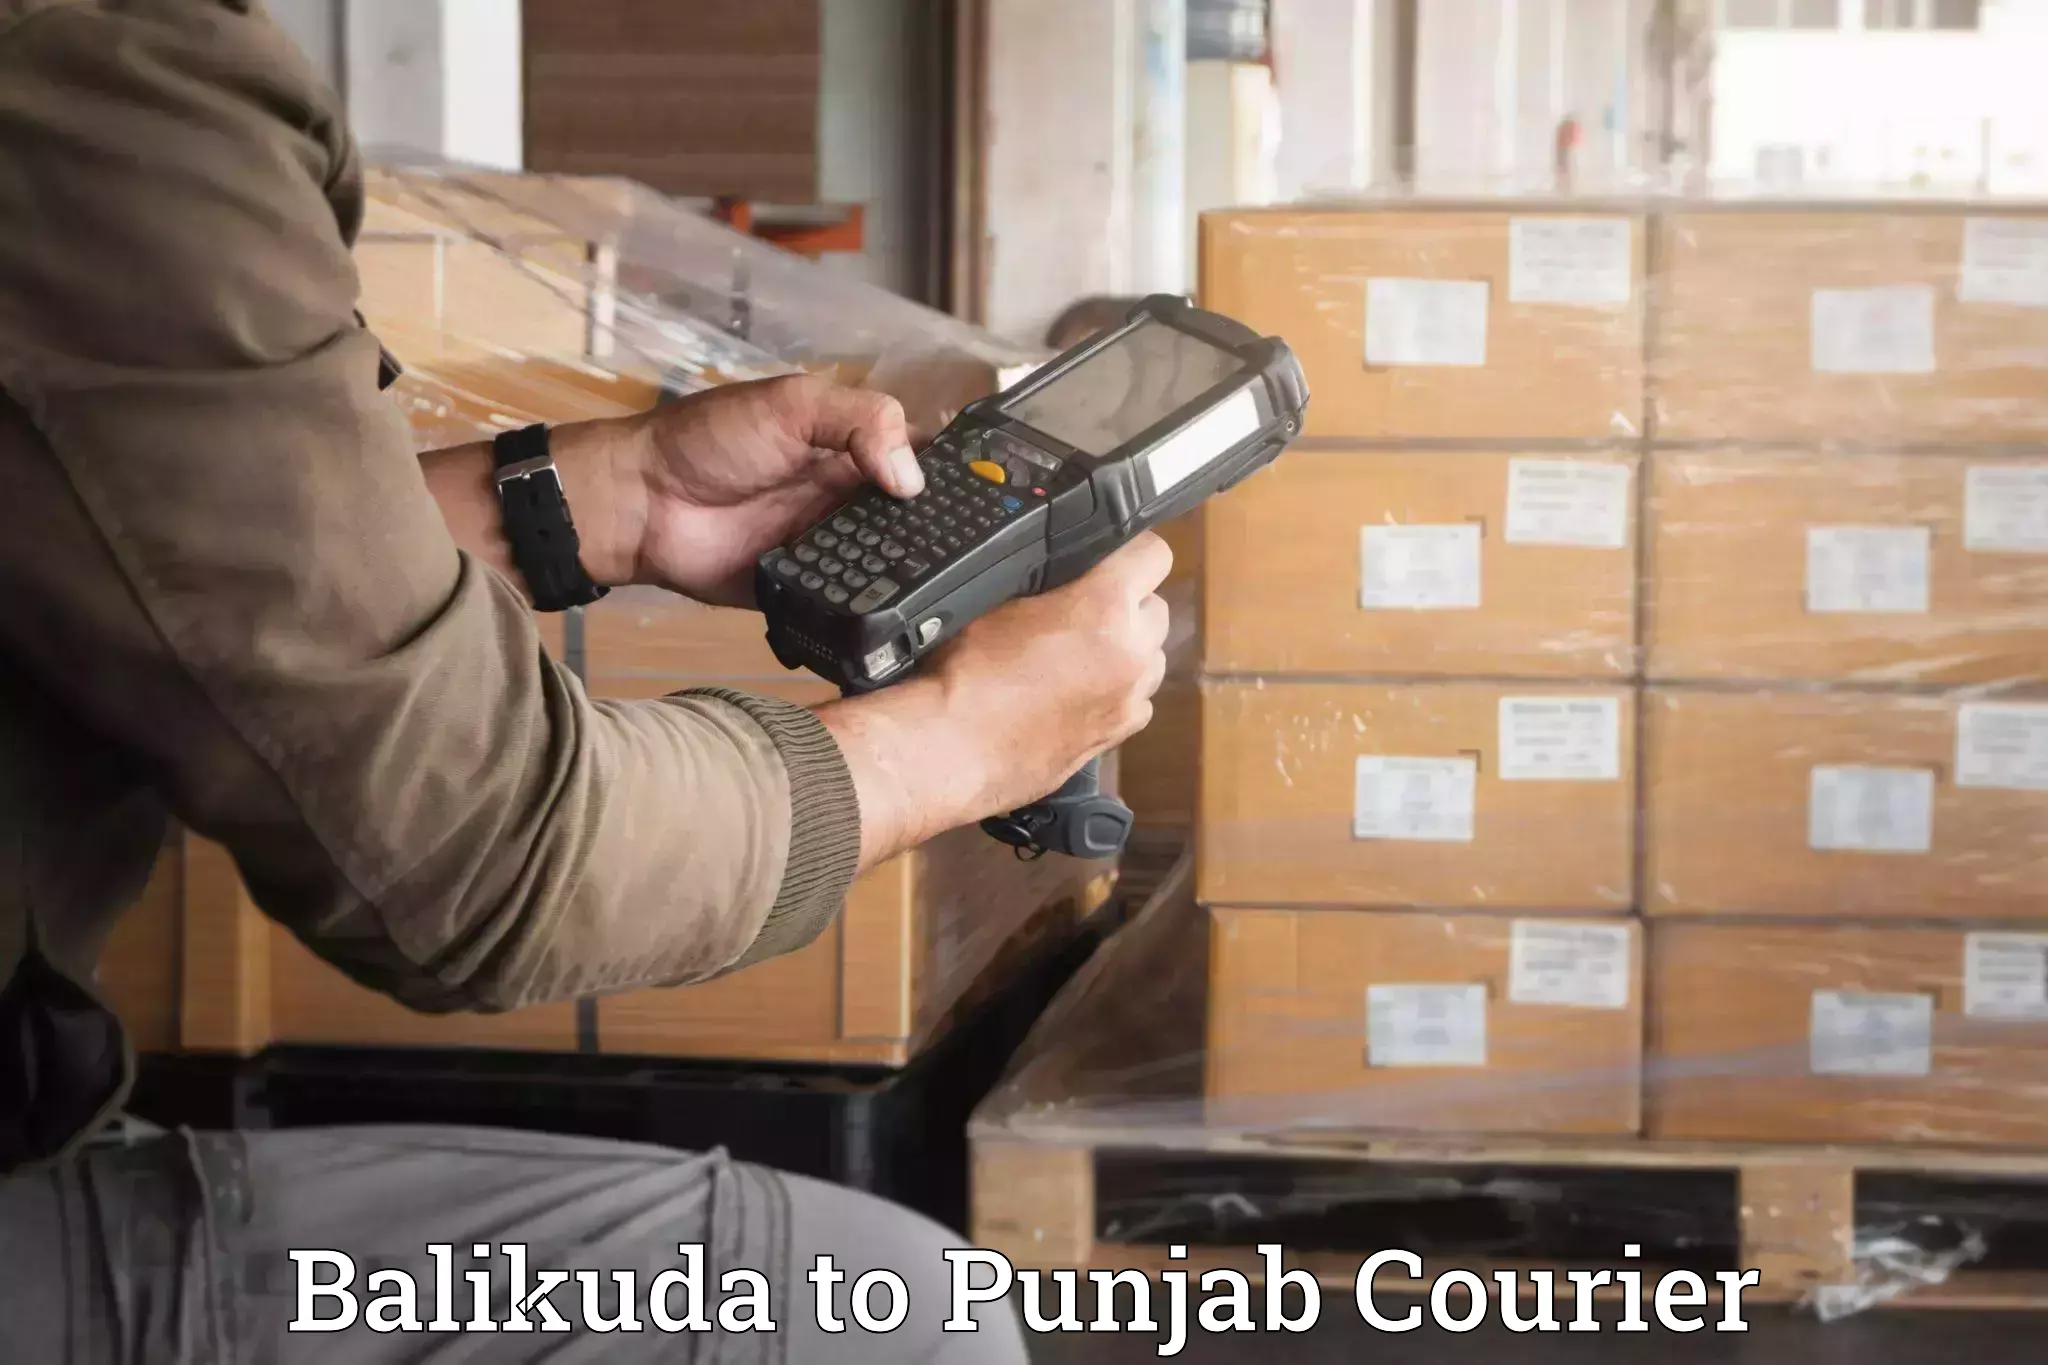 Stress-free moving Balikuda to Punjab